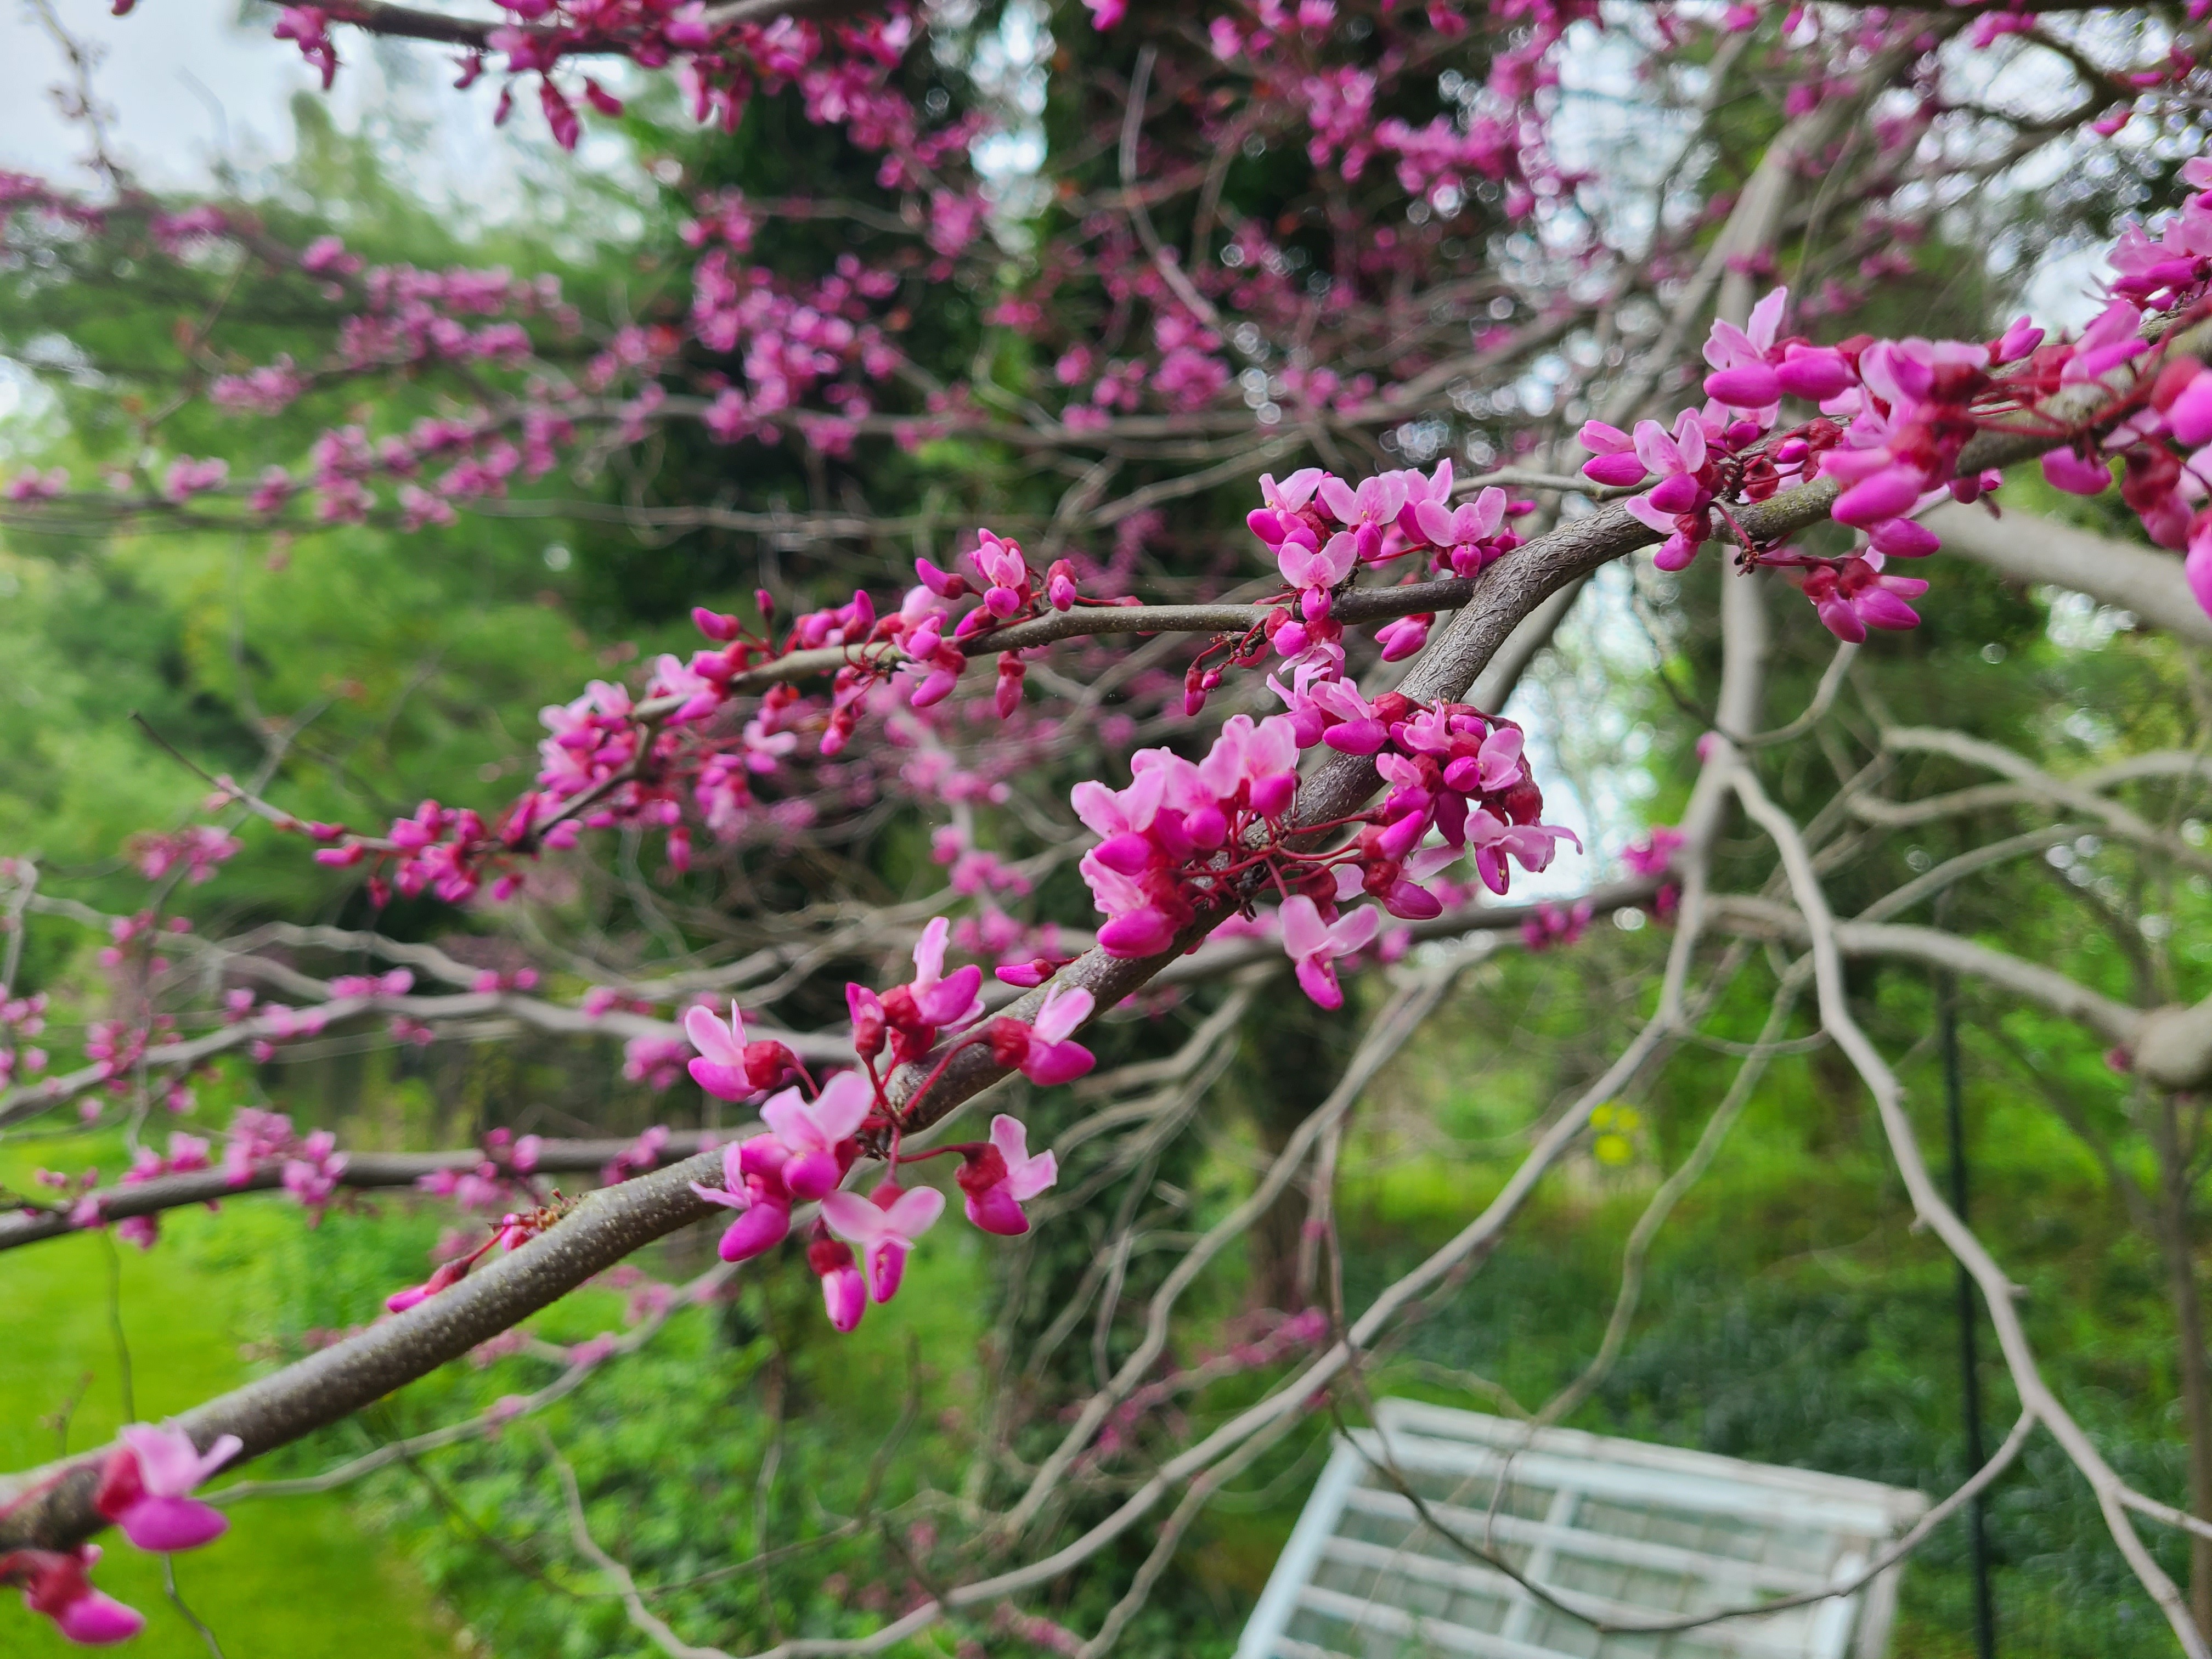 Redbud Tree in bloom